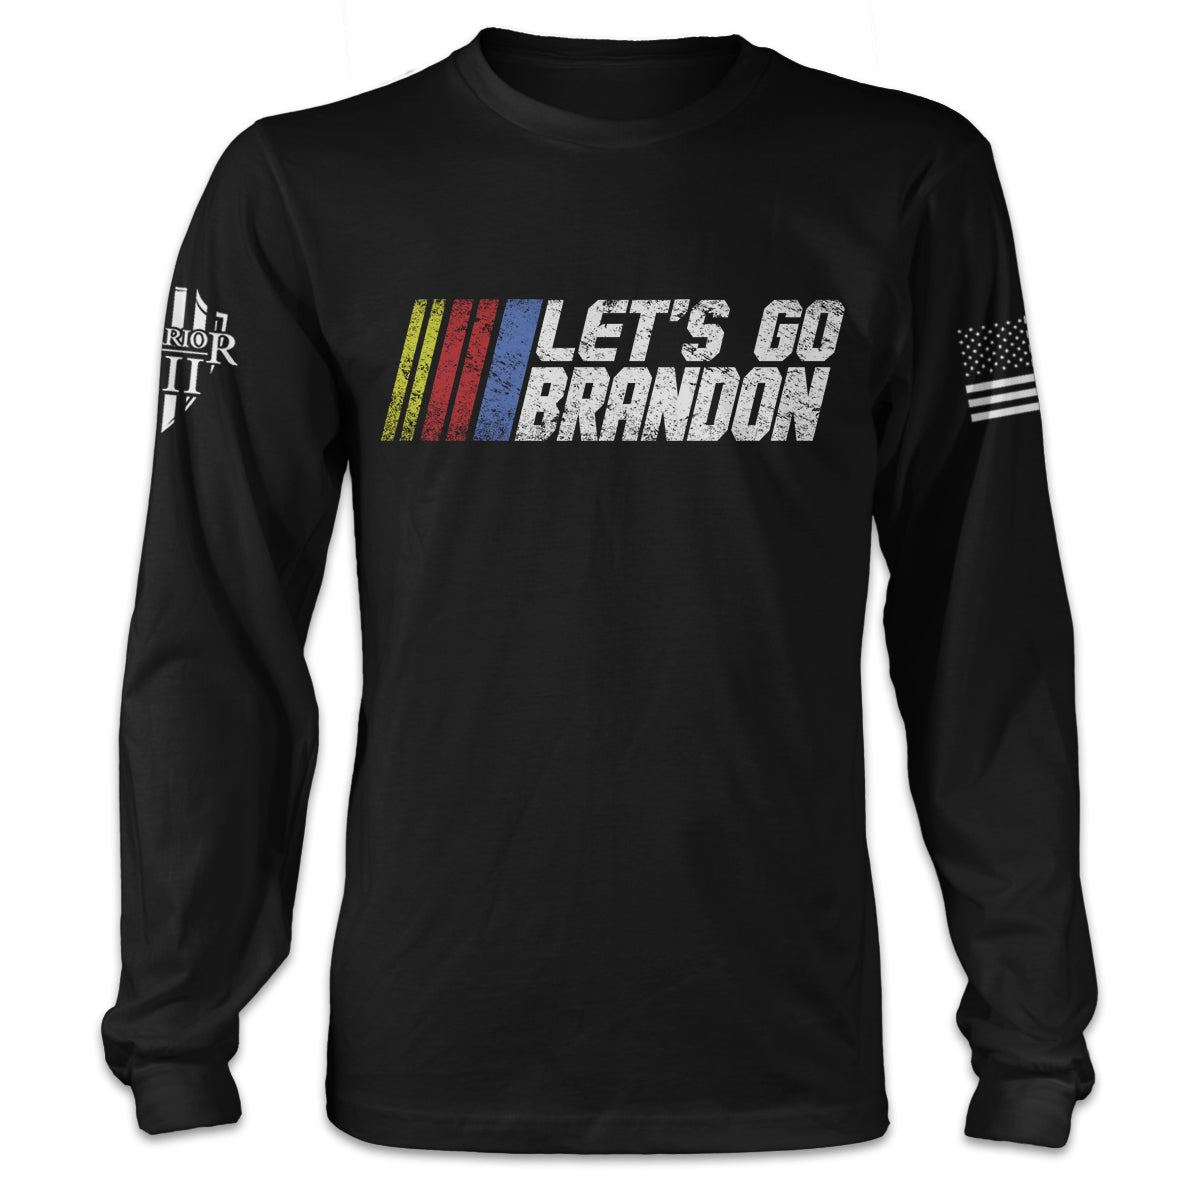 Let's Go Brandon - Long Sleeve - Warrior 12 - A Patriotic Apparel Company